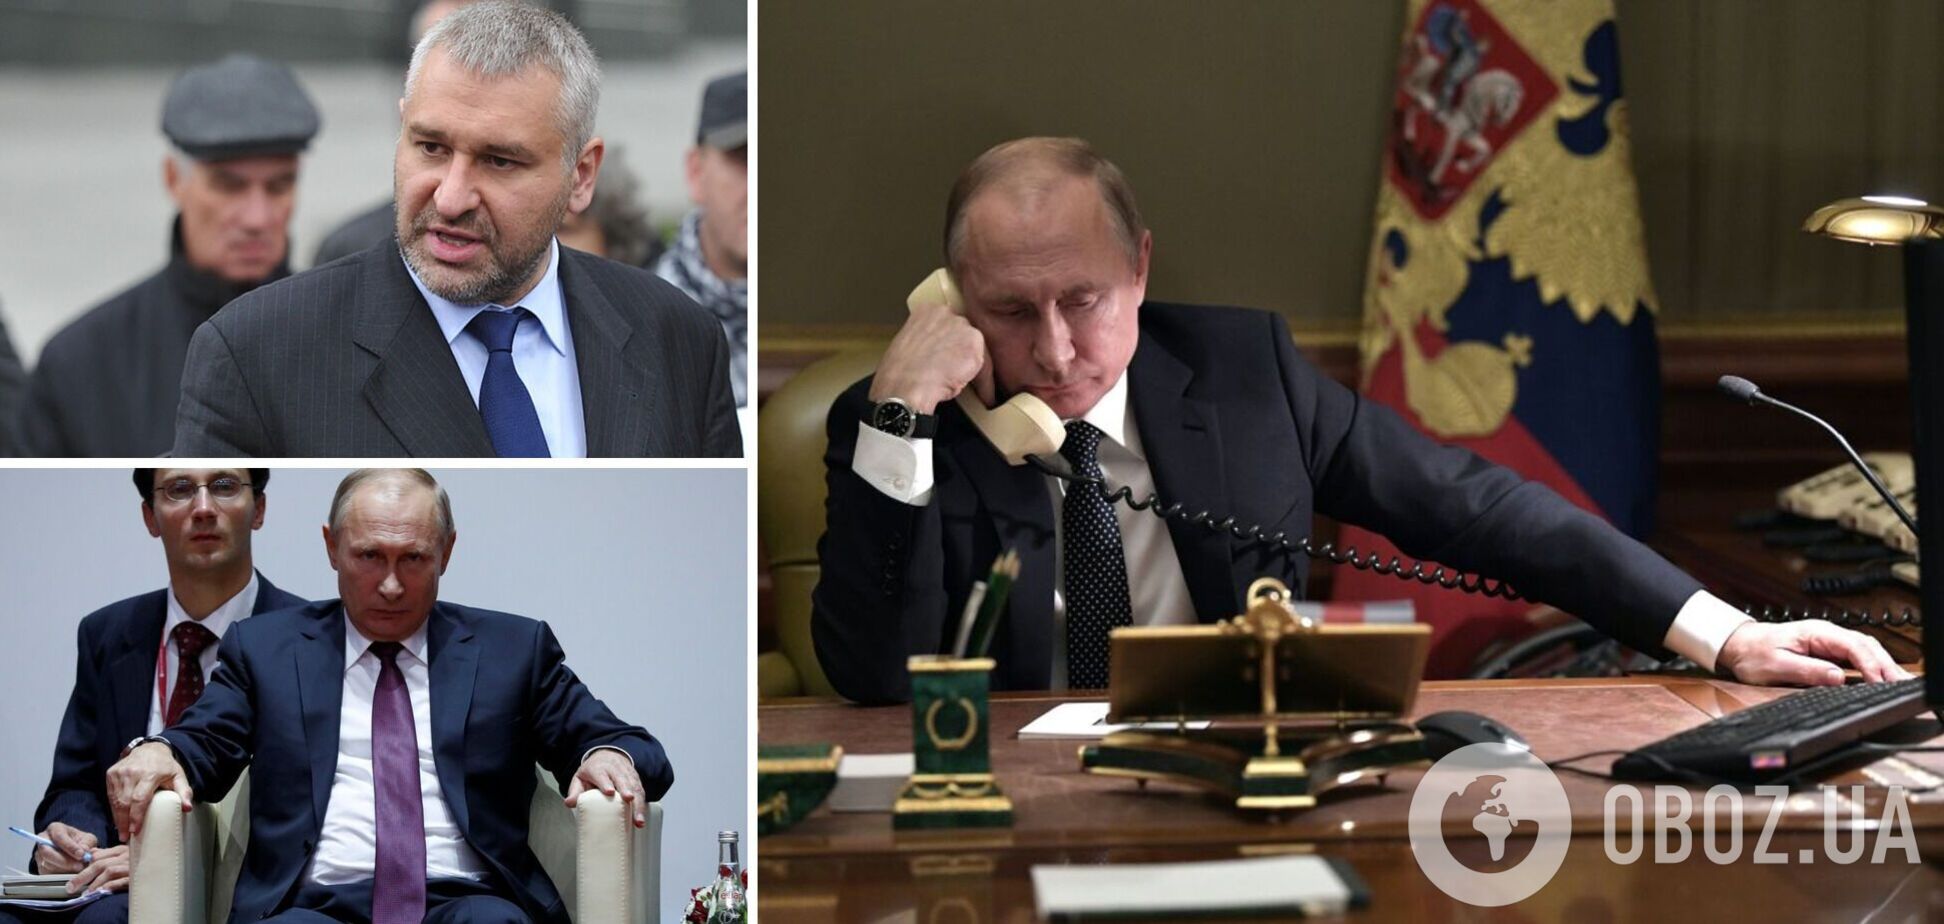 Фейгин: что будет с войной в случае смерти Путина? Кто заменит его на посту? Интервью